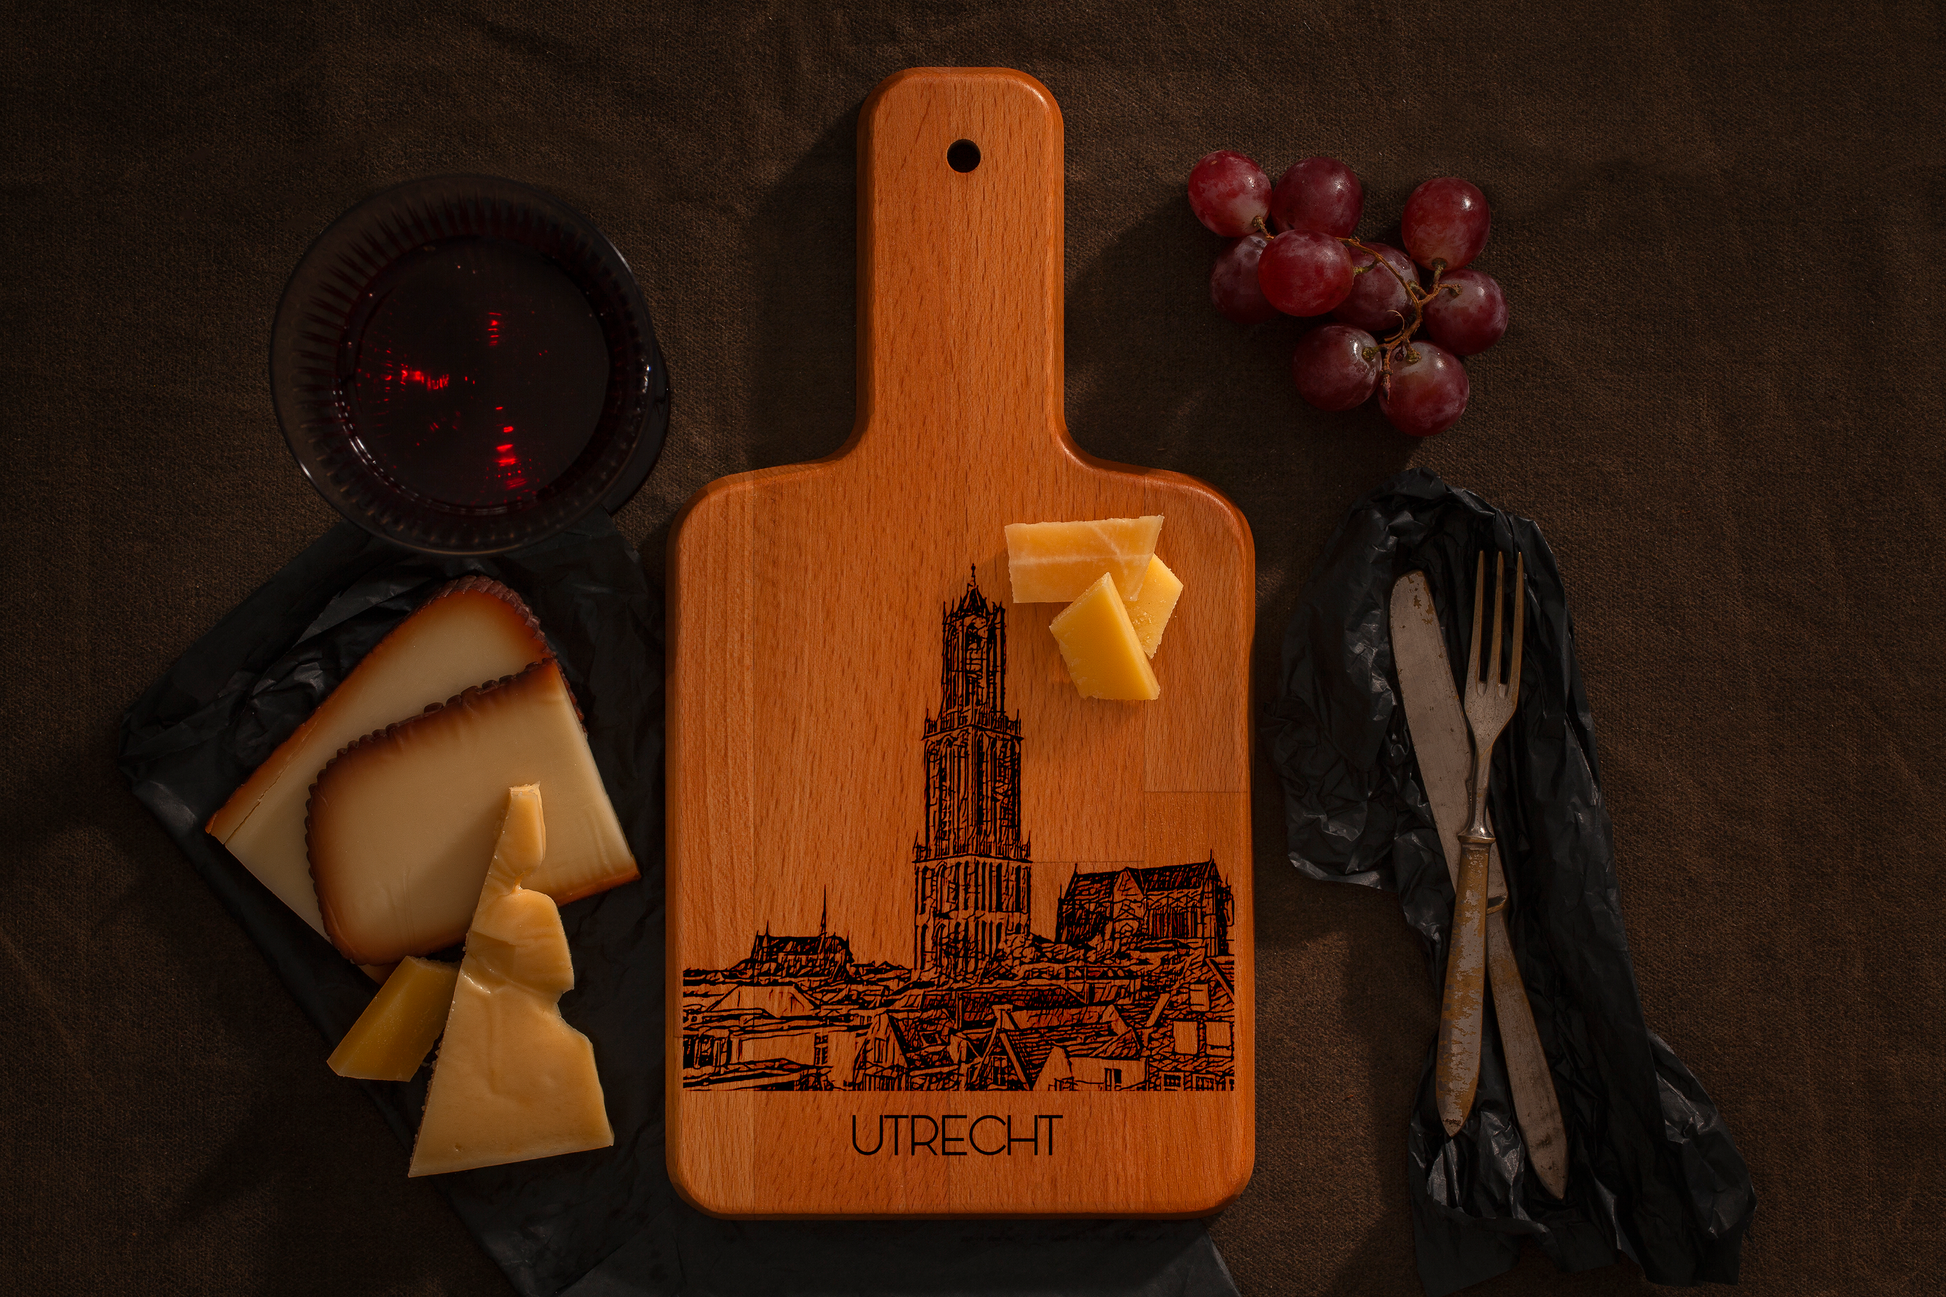 Utrecht, Domtoren, cheese board, with cheese